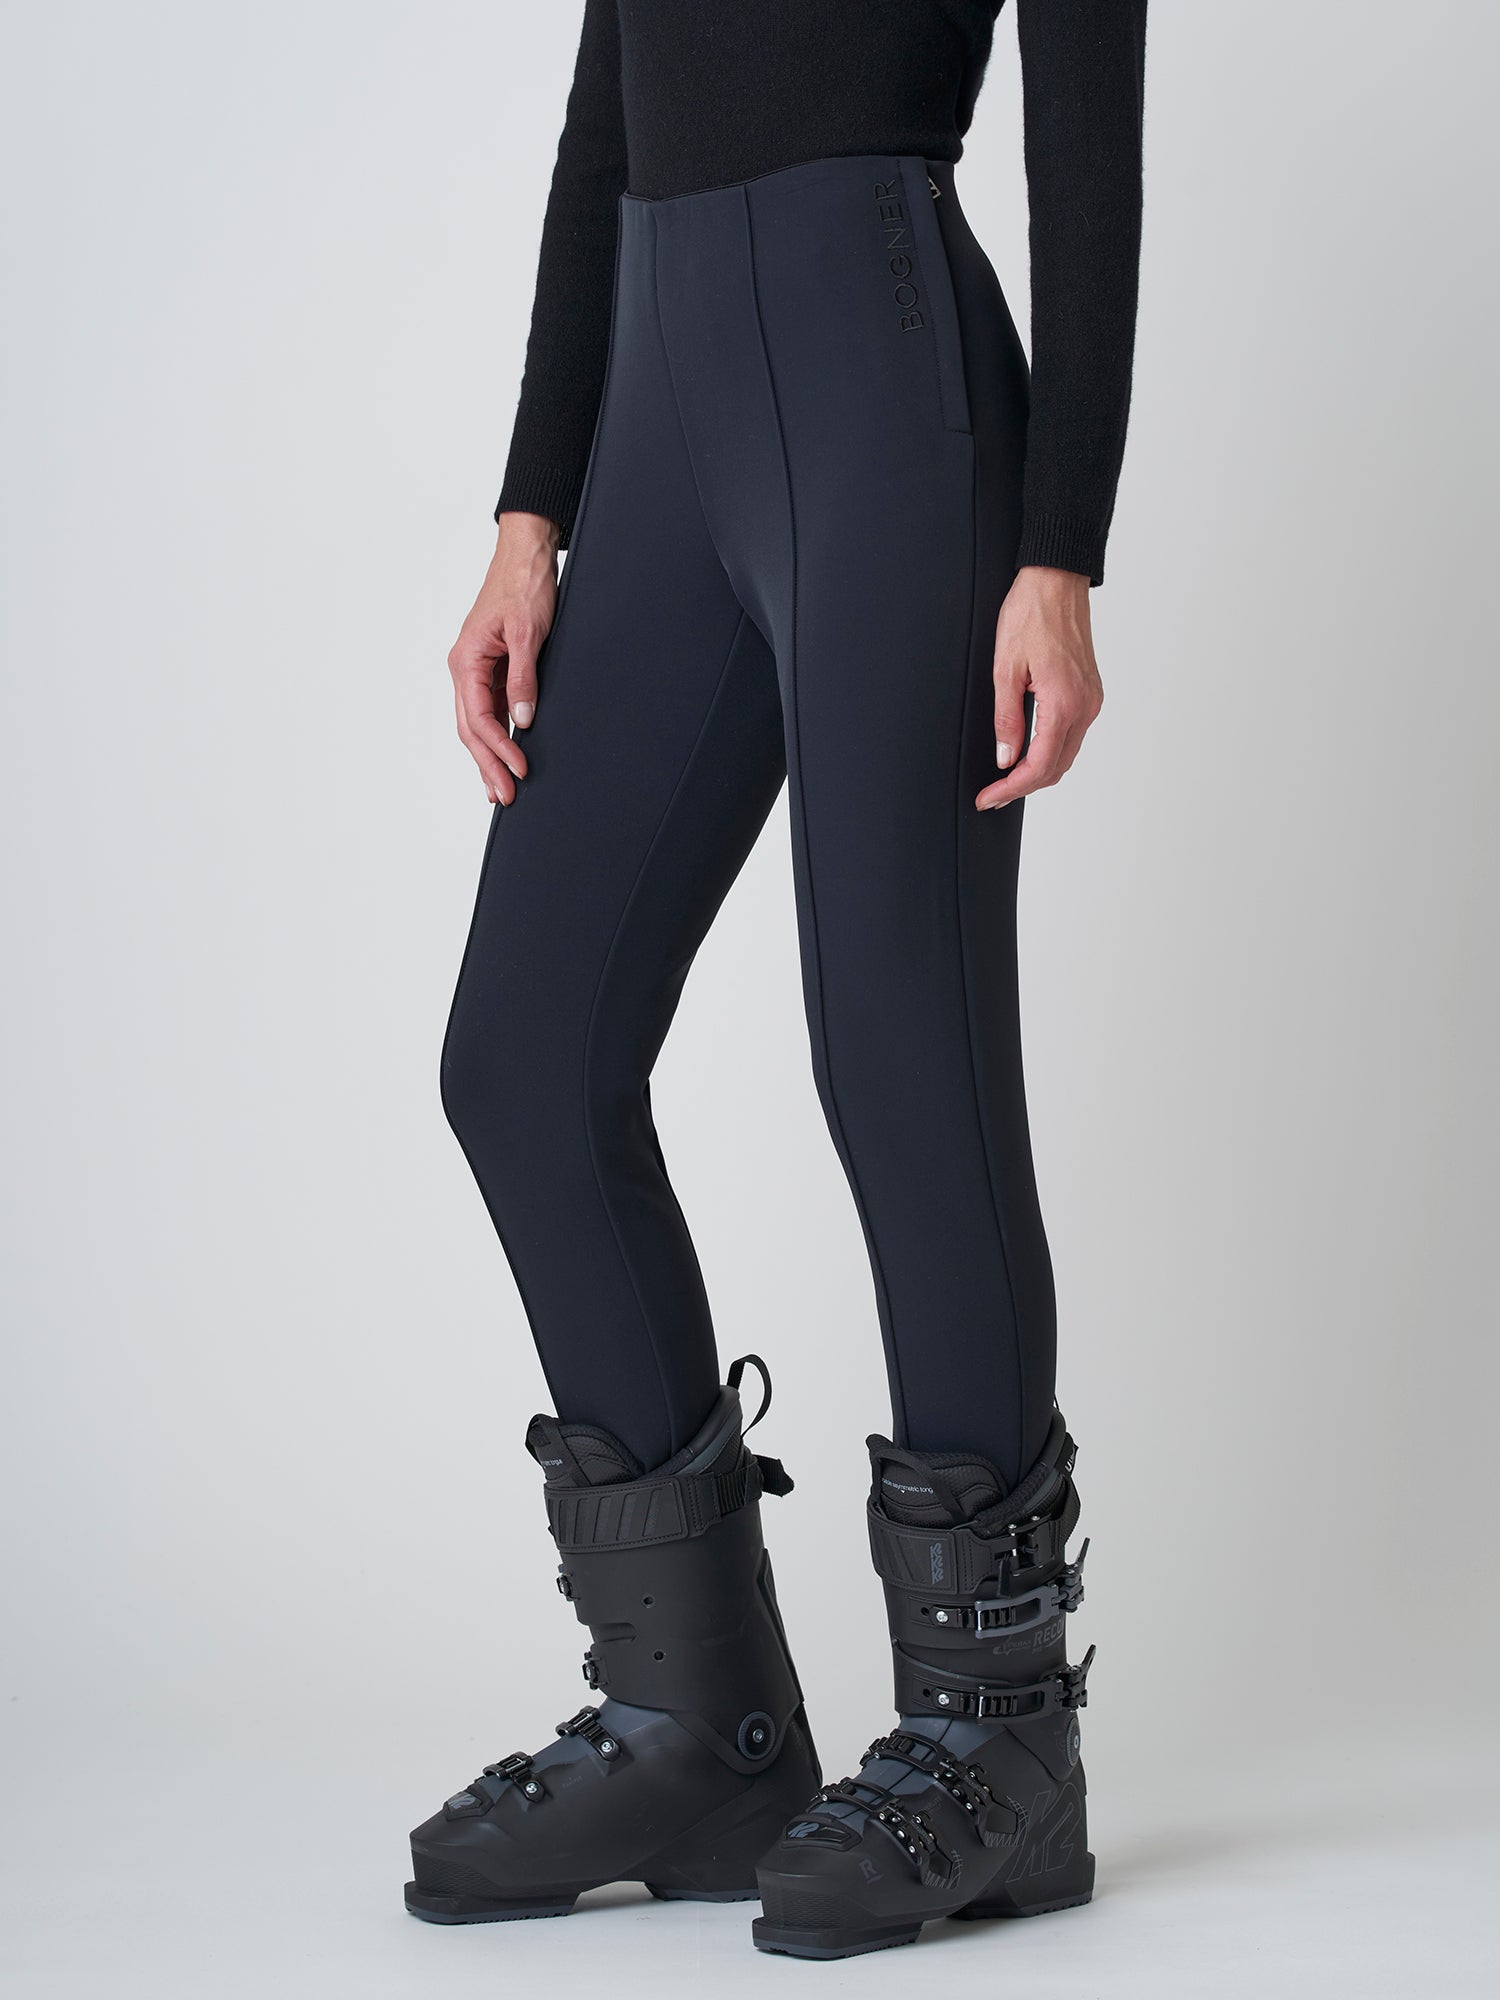 Elaine stirrup ski pants in black - Bogner